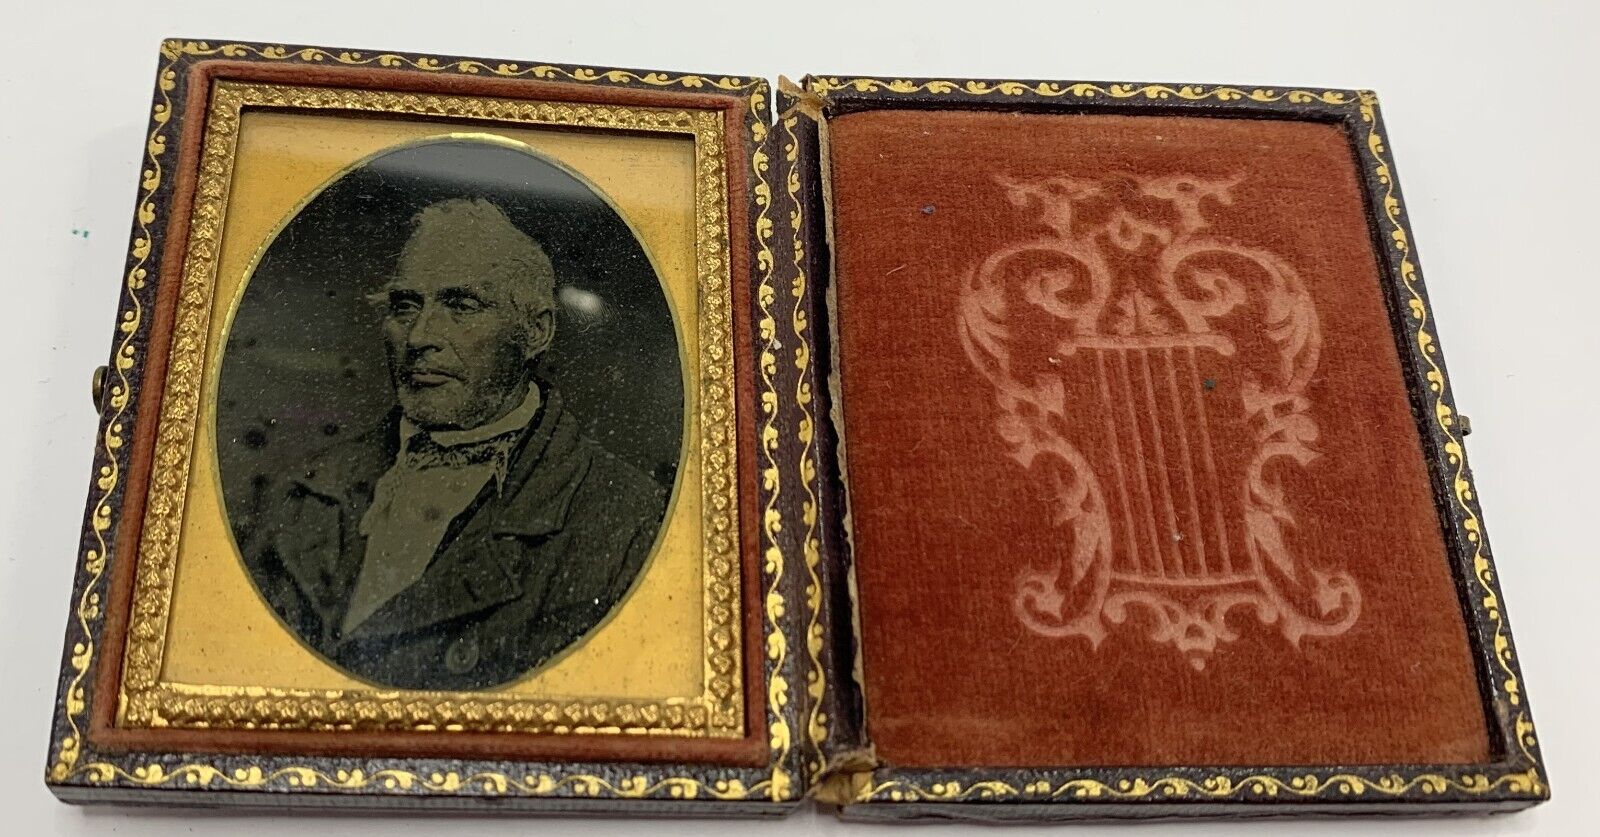 Antique Daguerreotype Wood & Embossed Leather Case - Important Looking Gentleman